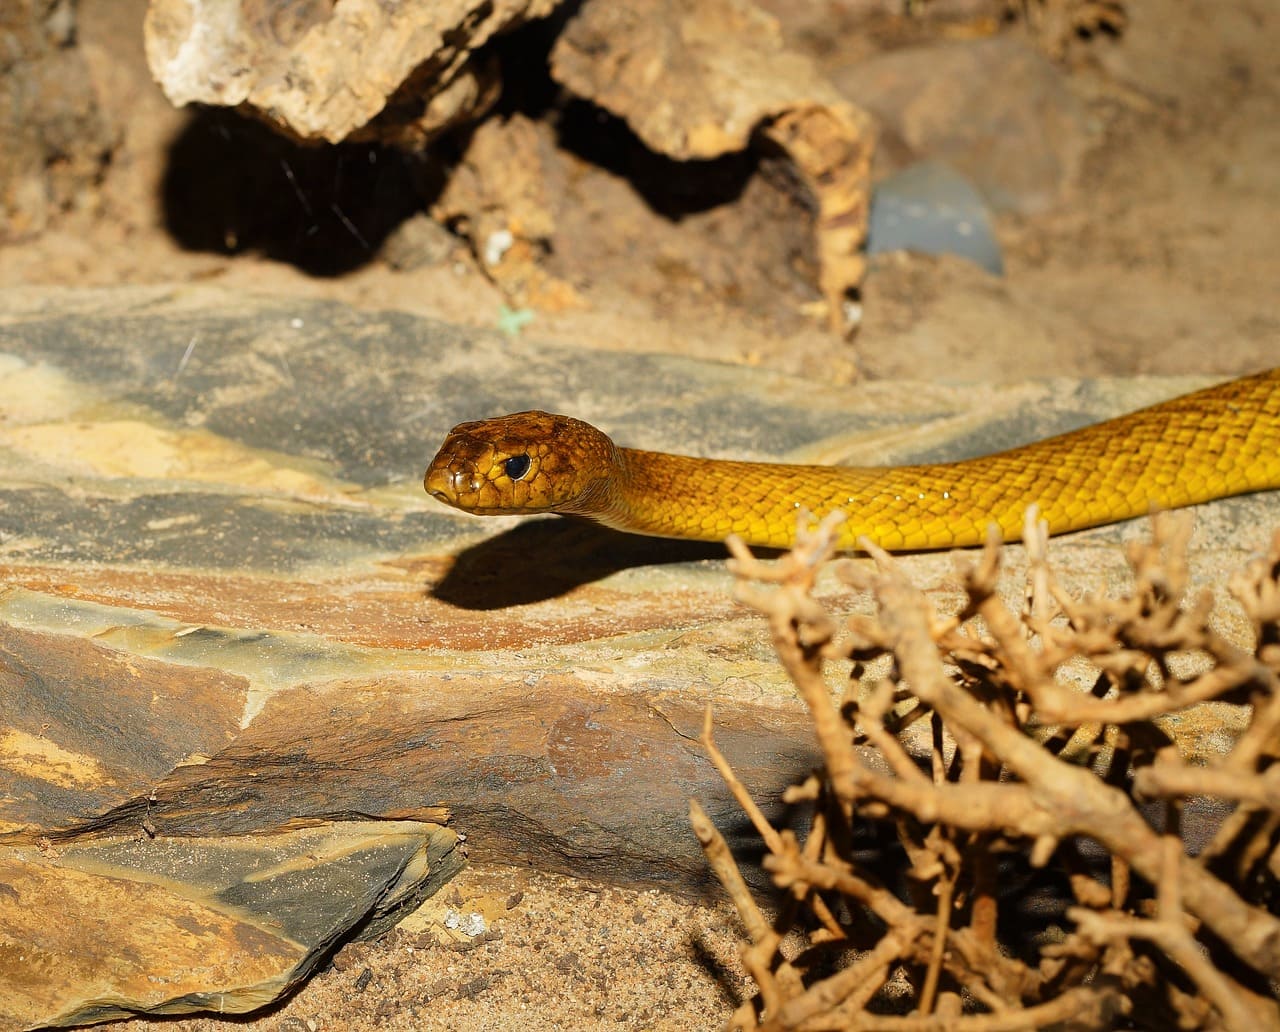 taïpan du désert ou taïpan de l'intérieur, le serpent le plus venimeux en Australie